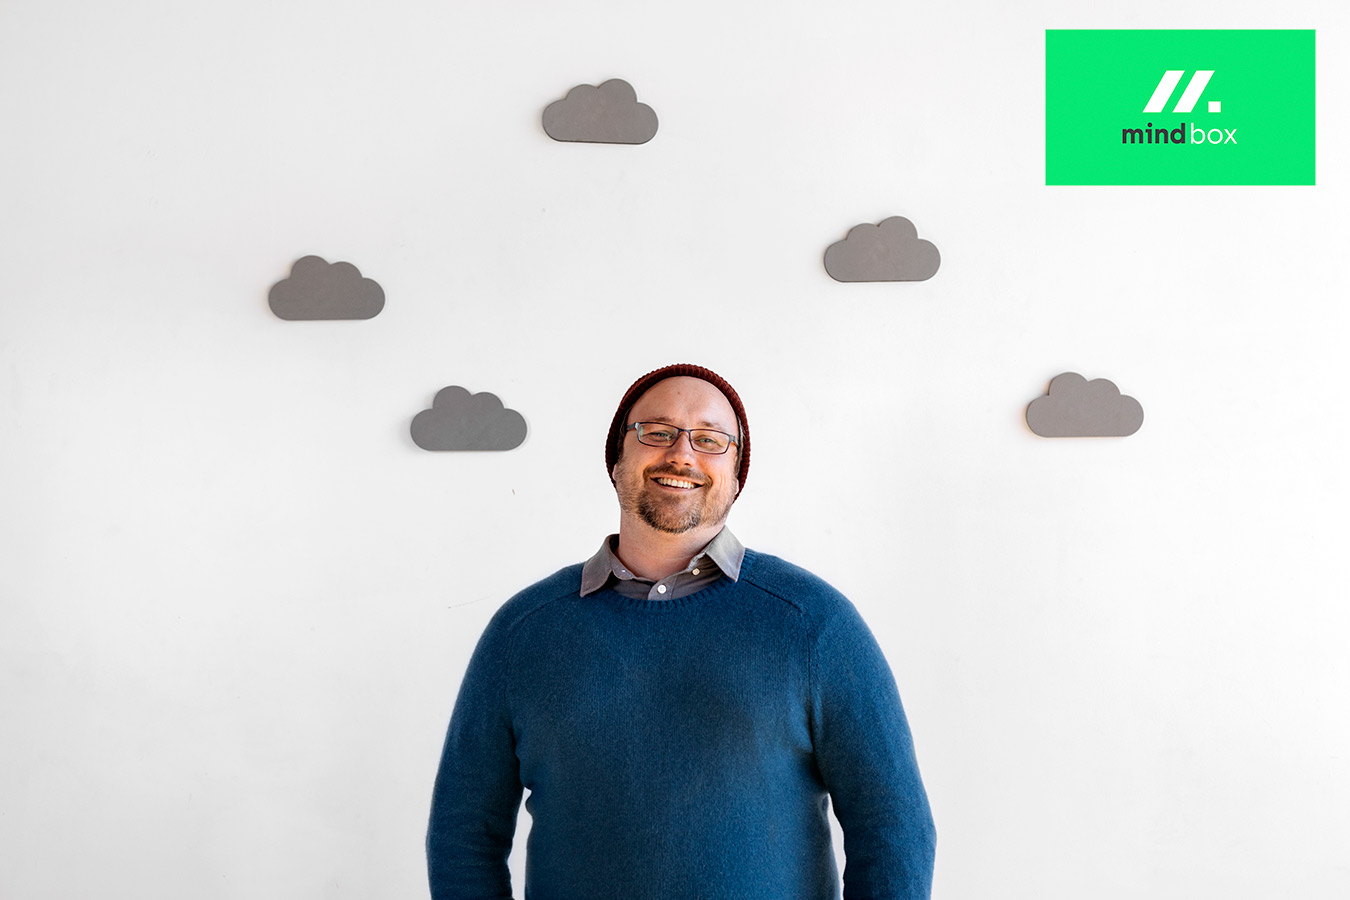 cloud native pomažemo tvrtkama poput vaše da uspiju u doba oblaka